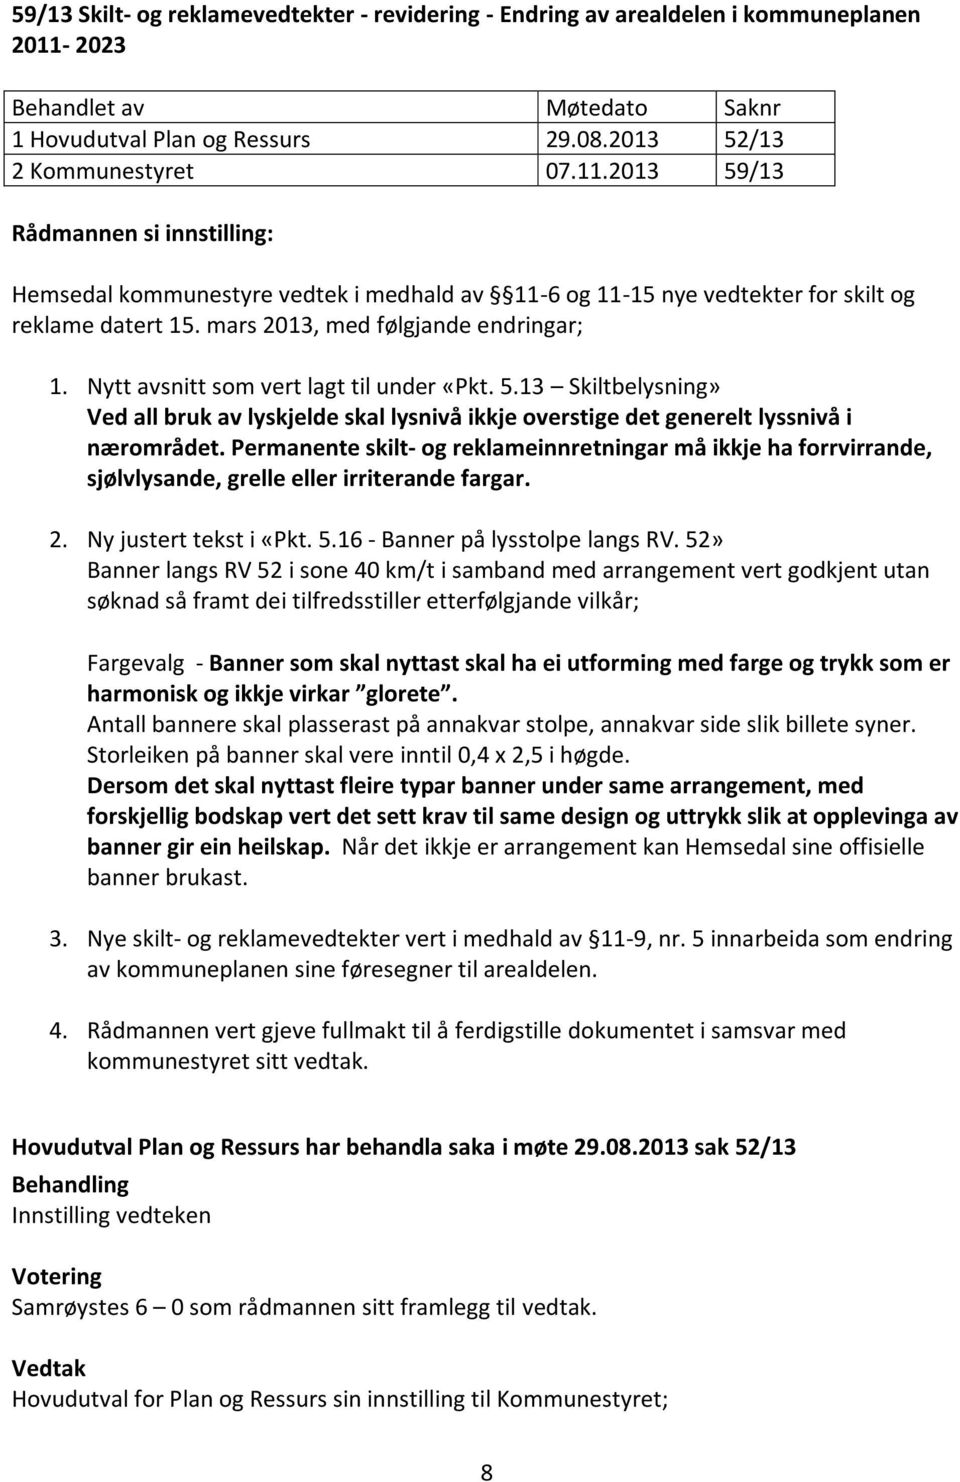 2013 59/13 Rådmannen si innstilling: Hemsedal kommunestyre vedtek i medhald av 11-6 og 11-15 nye vedtekter for skilt og reklame datert 15. mars 2013, med følgjande endringar; 1.